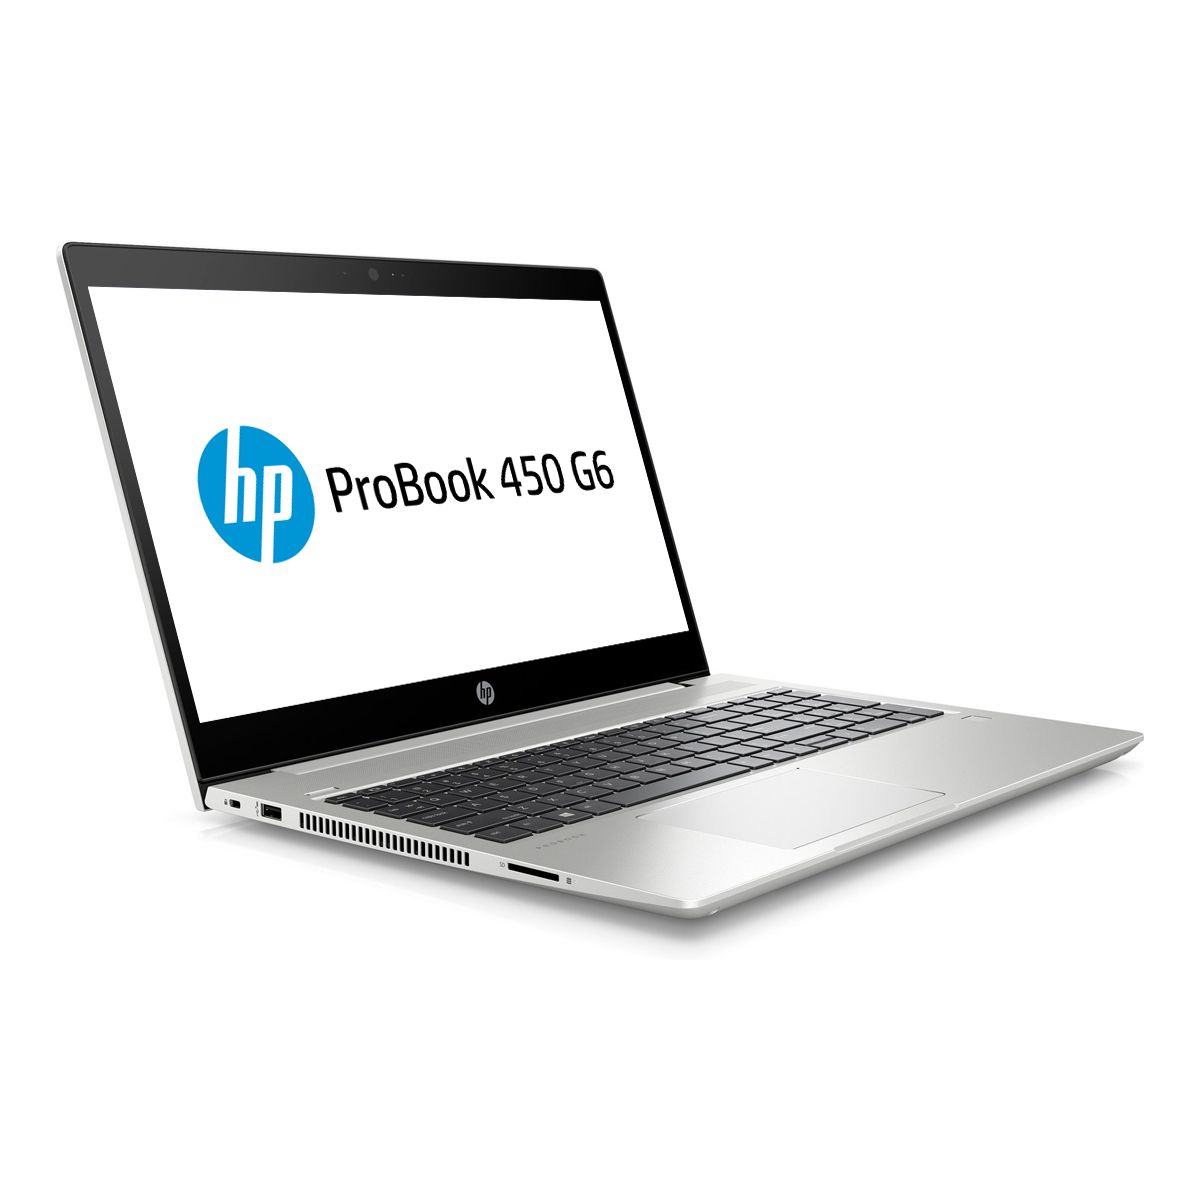 HP ProBook 450 G6, 15.6" FHD, i5-8265U, 8GB , 256GB SSD, MX130 2 - Click Image to Close